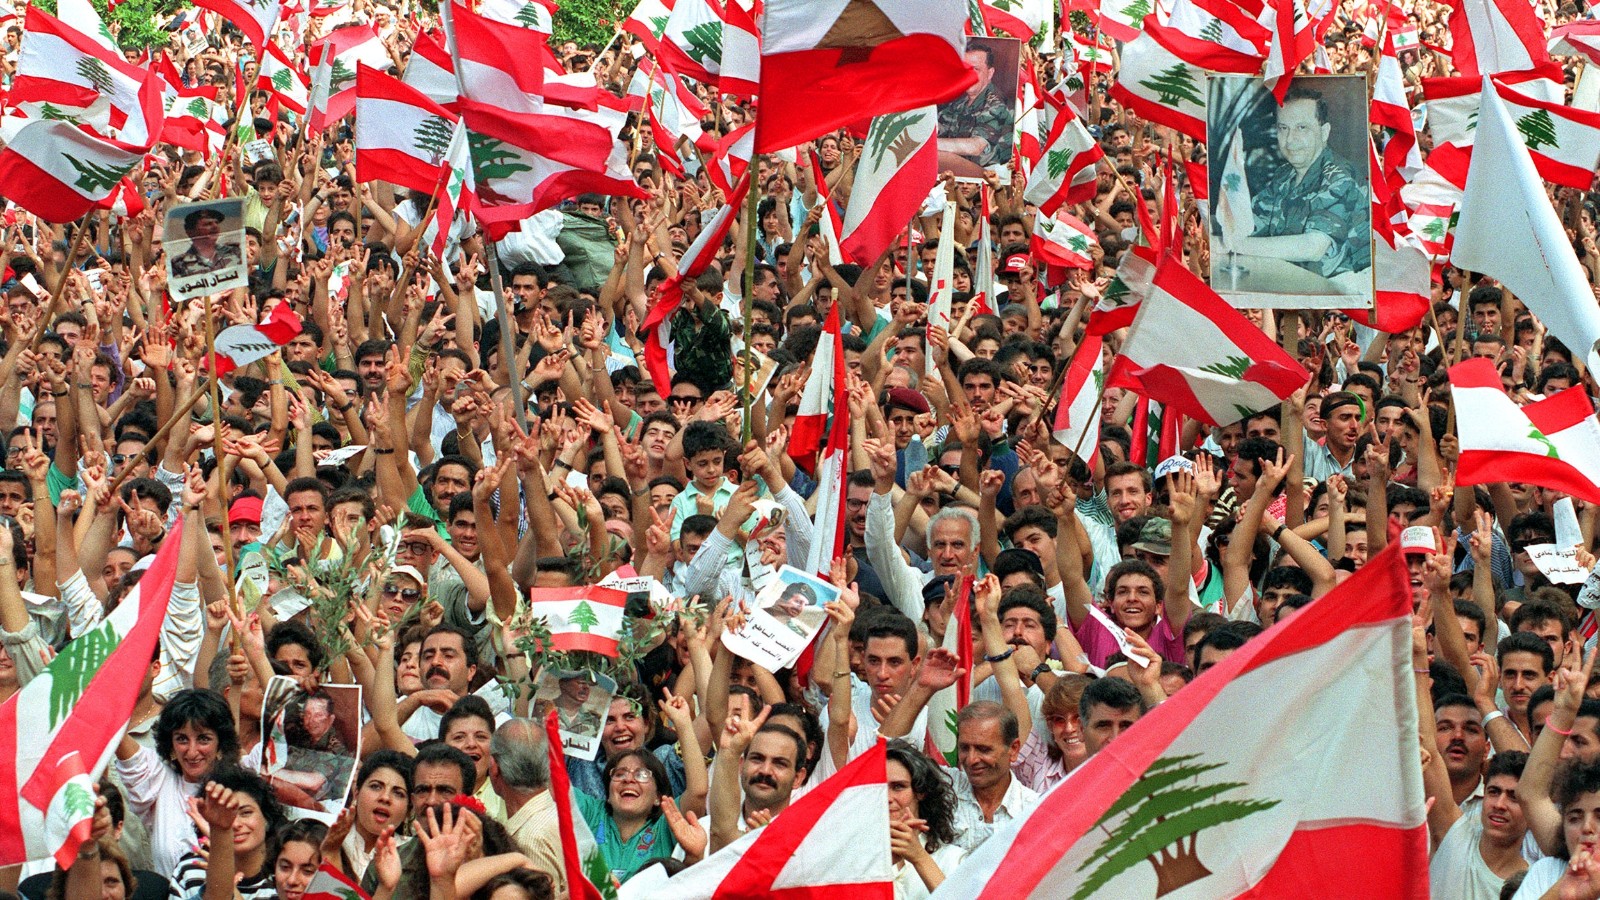 اي النظامين سيسقط أولا: اللبناني ام السوري؟